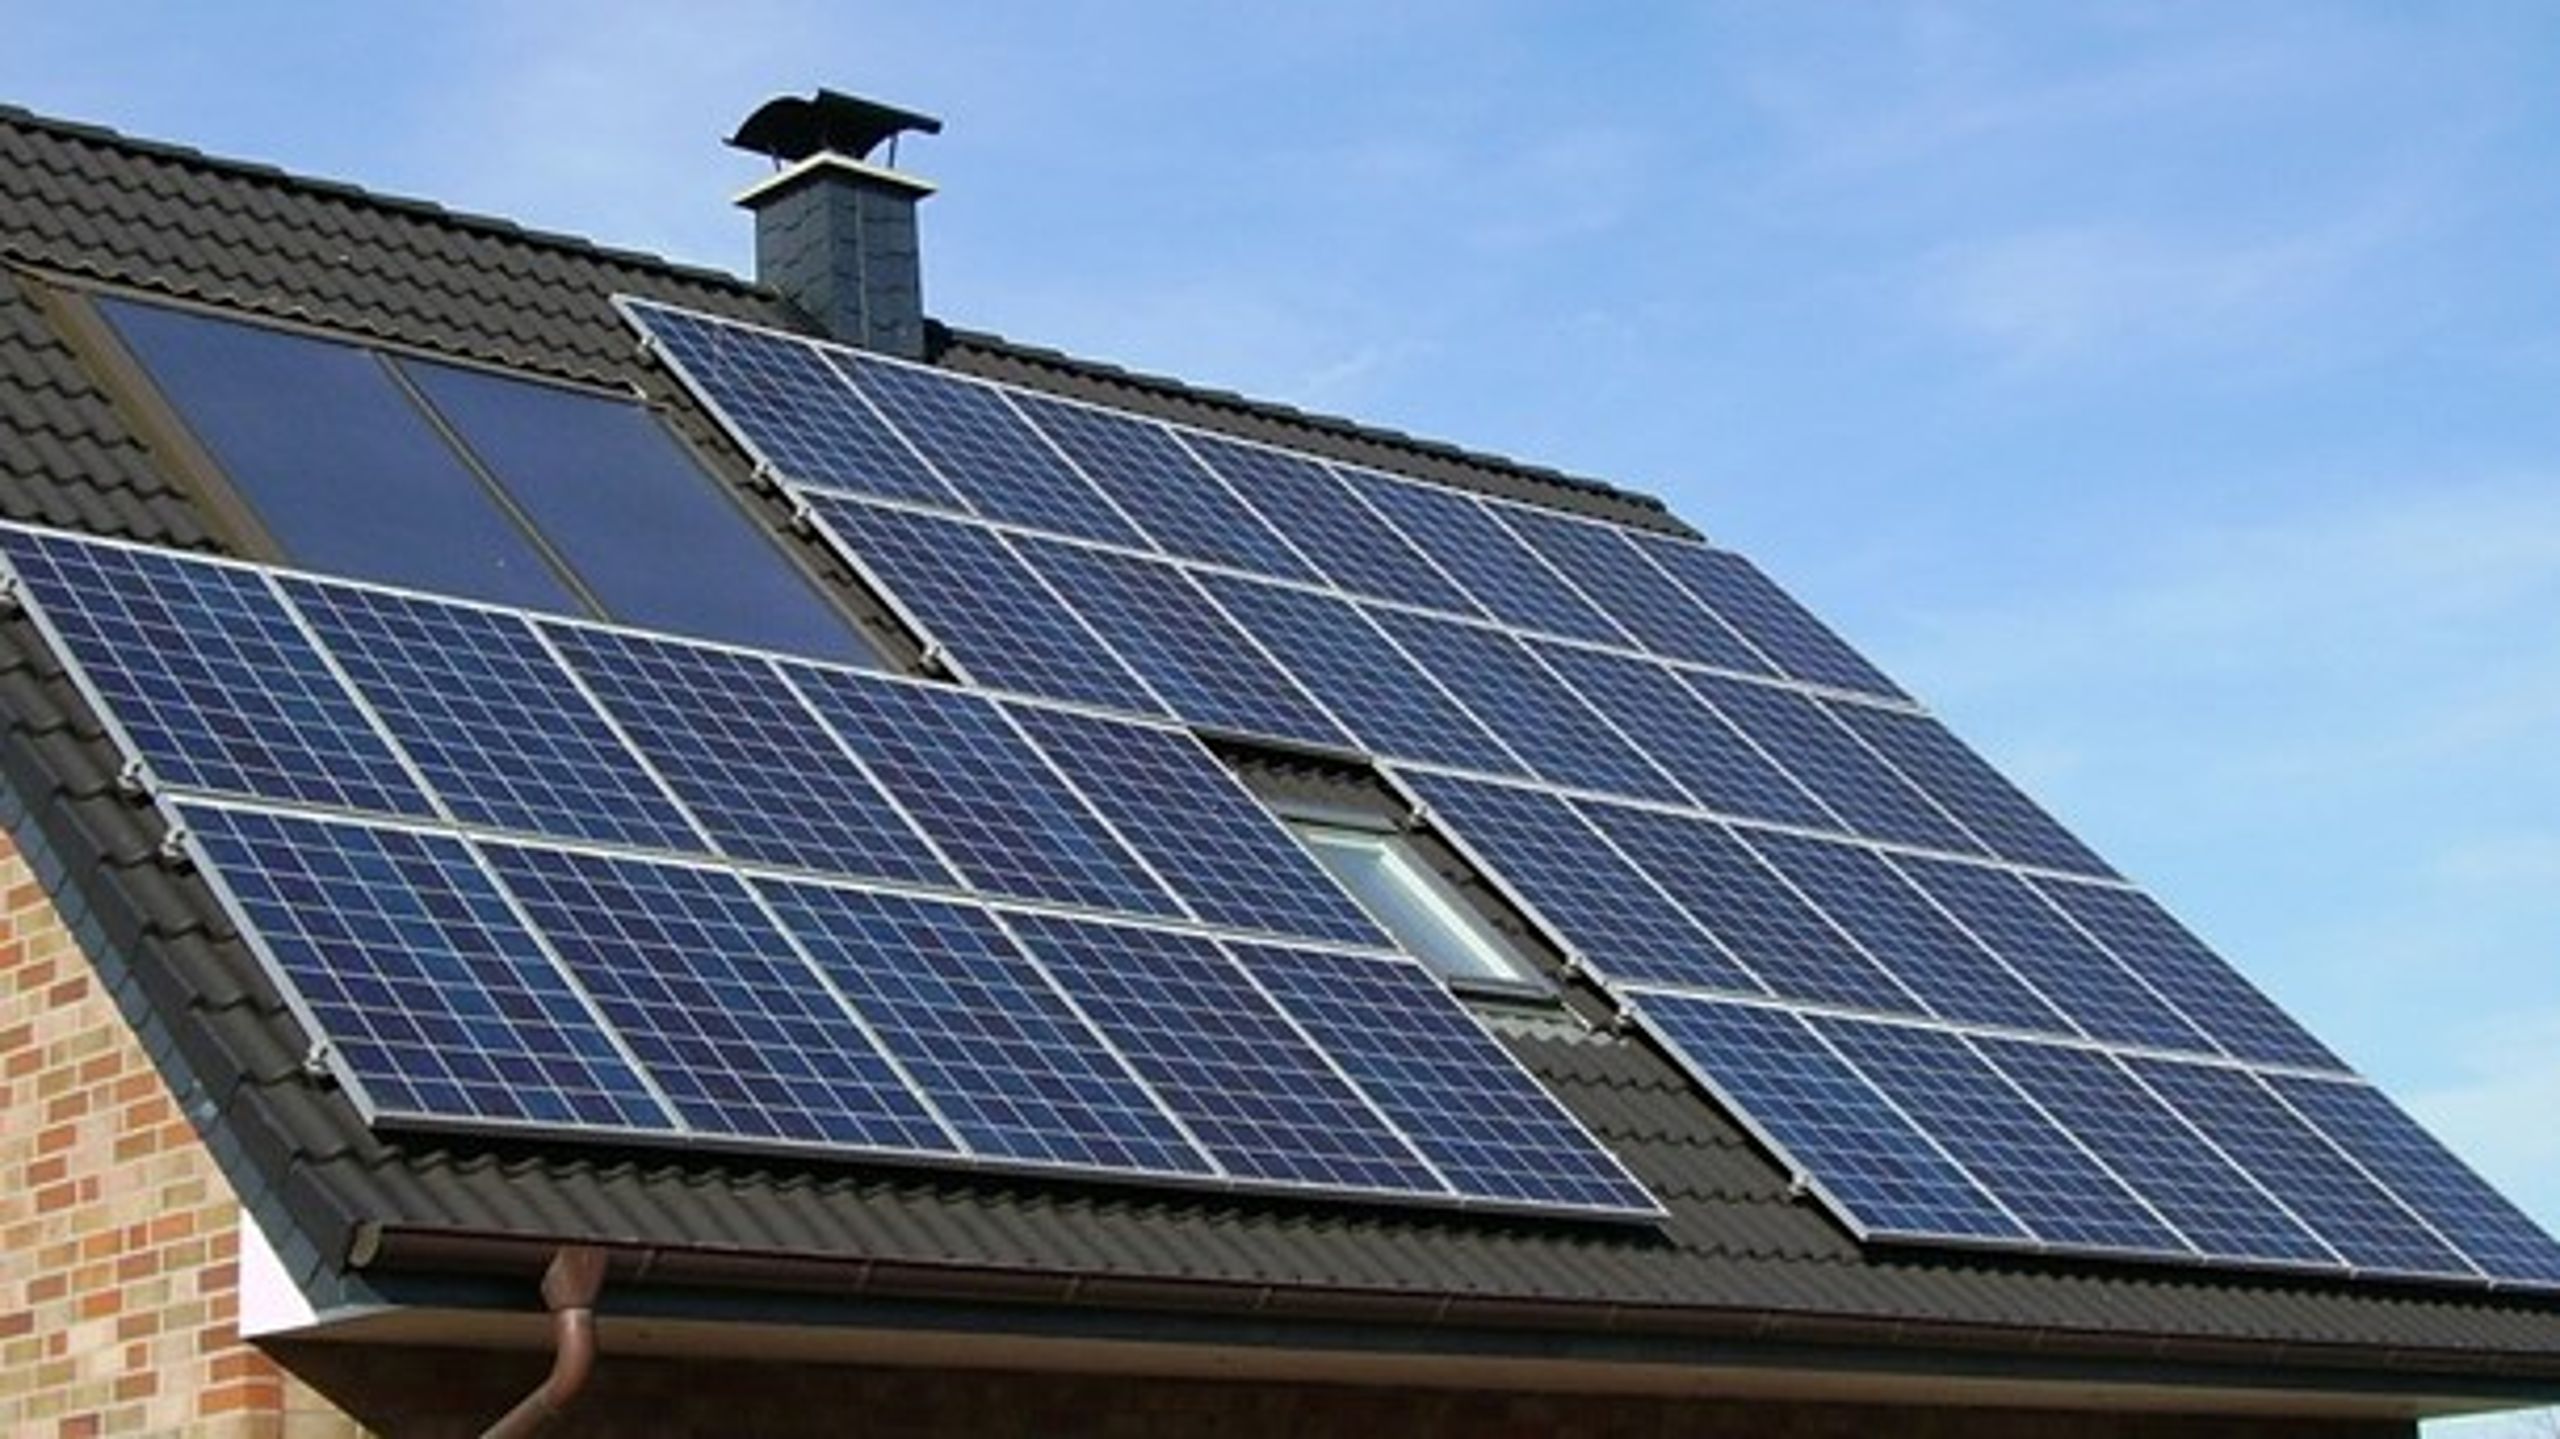 Stoppet för nya elproducenter att ansluta sig till elnätet gäller såväl större anläggningar som villaägare som vill installera solpaneler på taket.